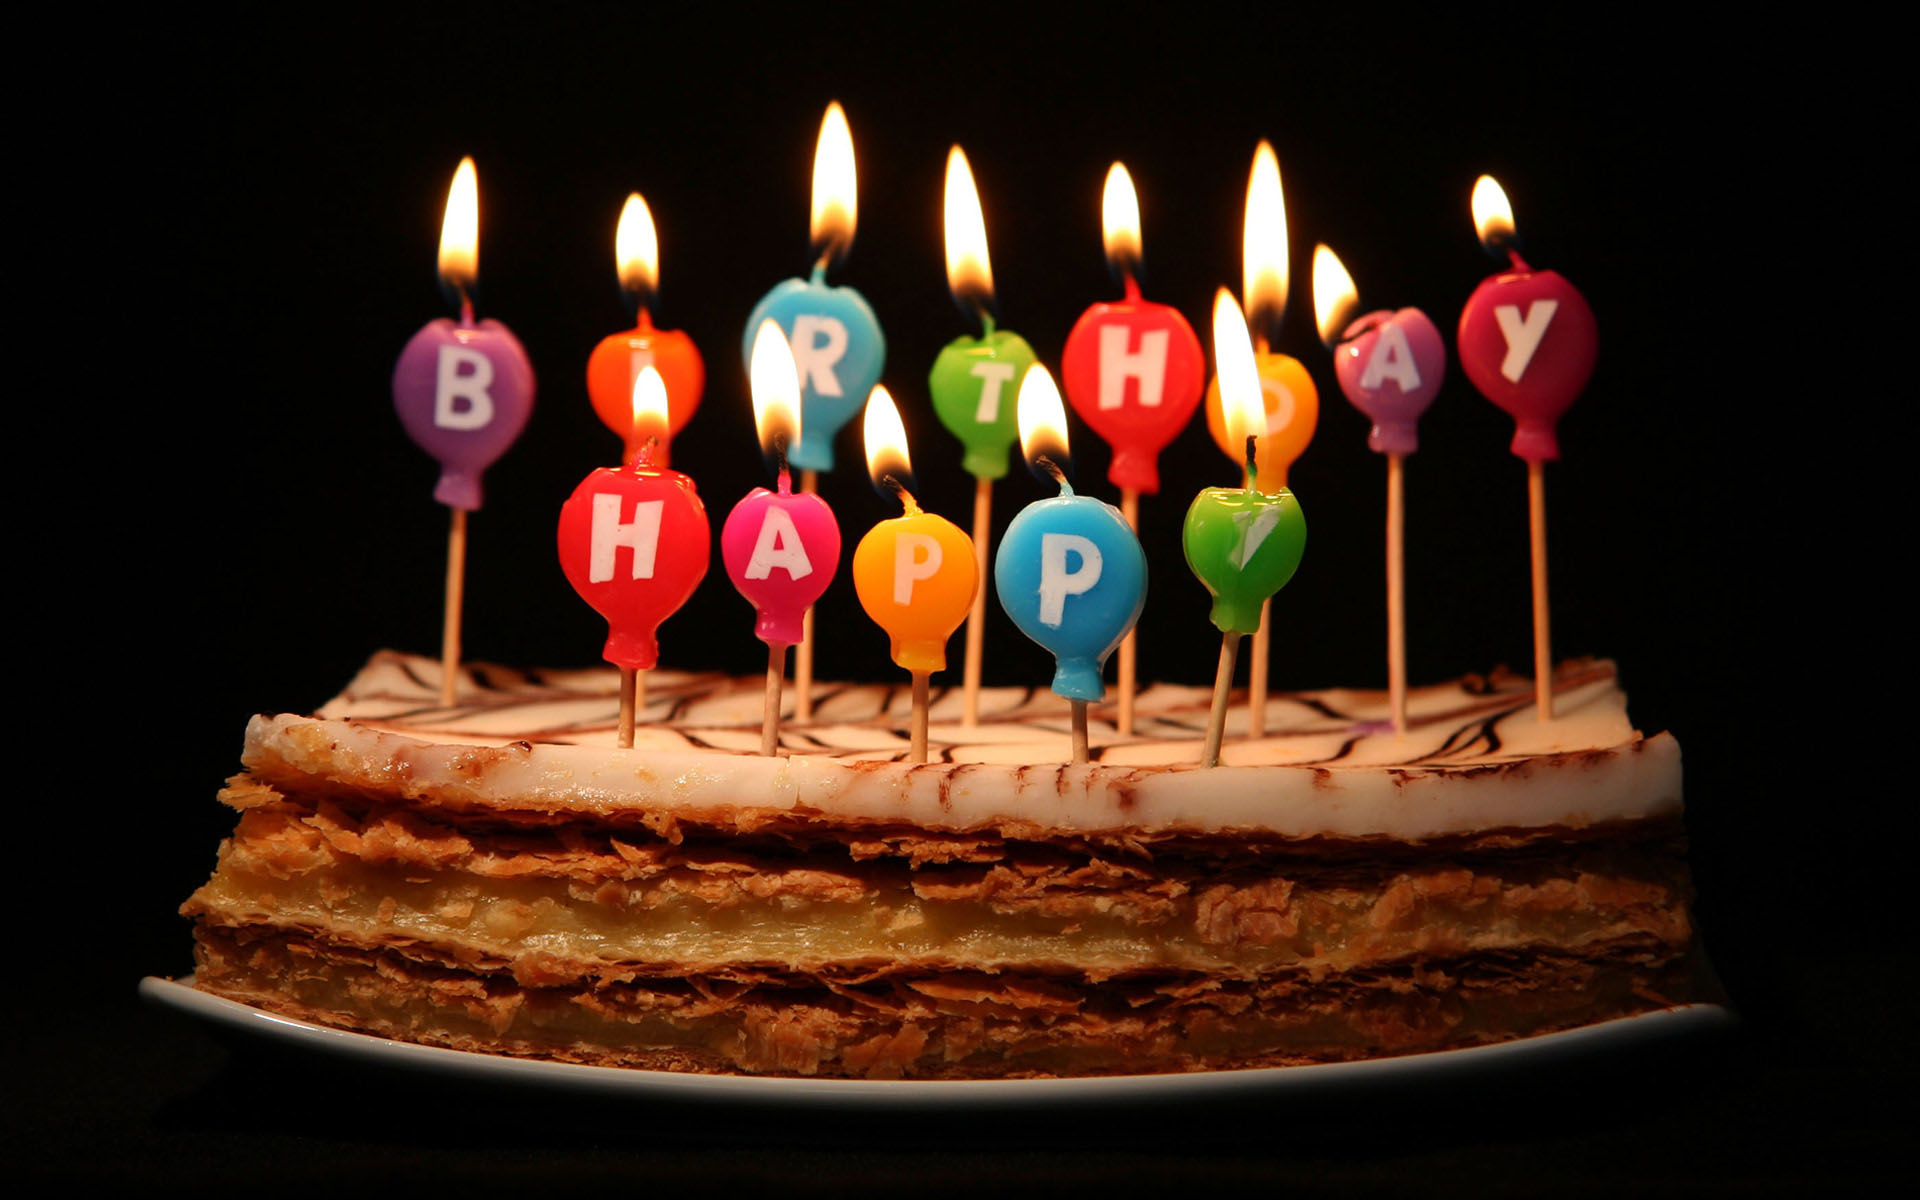  Happy  Birthday  Cake Pictures PixelsTalk Net